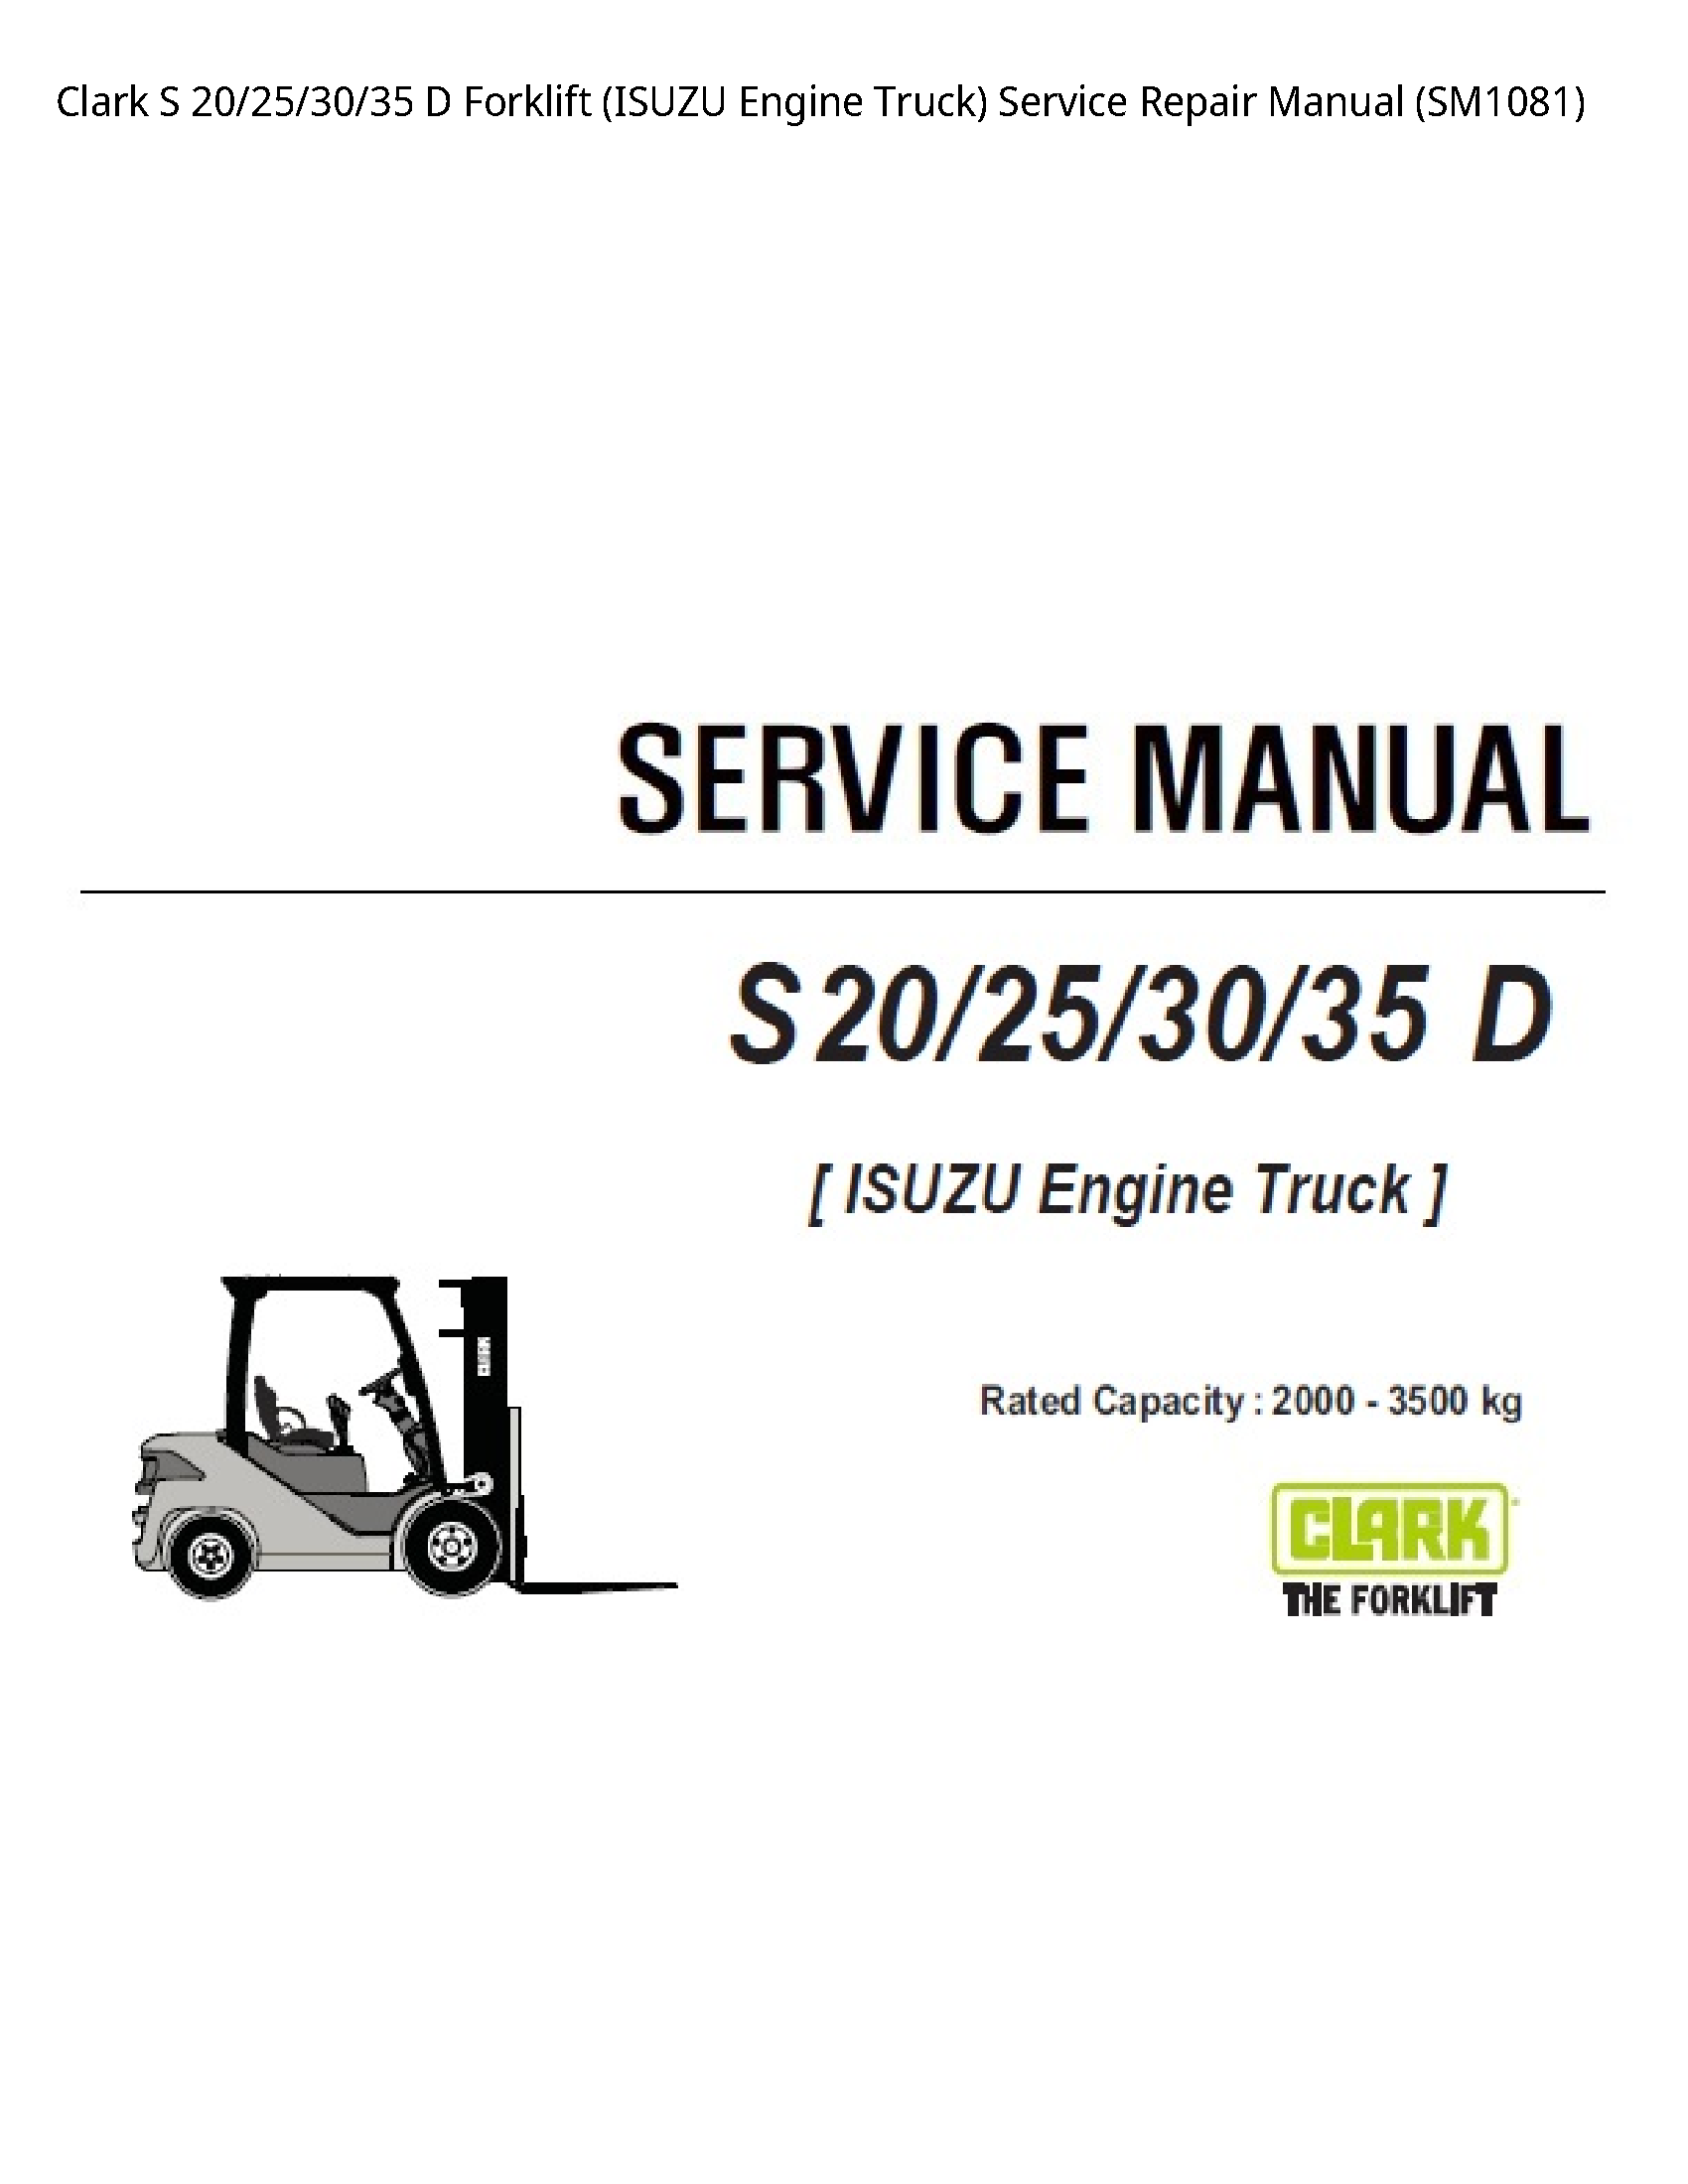 Clark 20 Forklift (ISUZU Engine Truck) manual